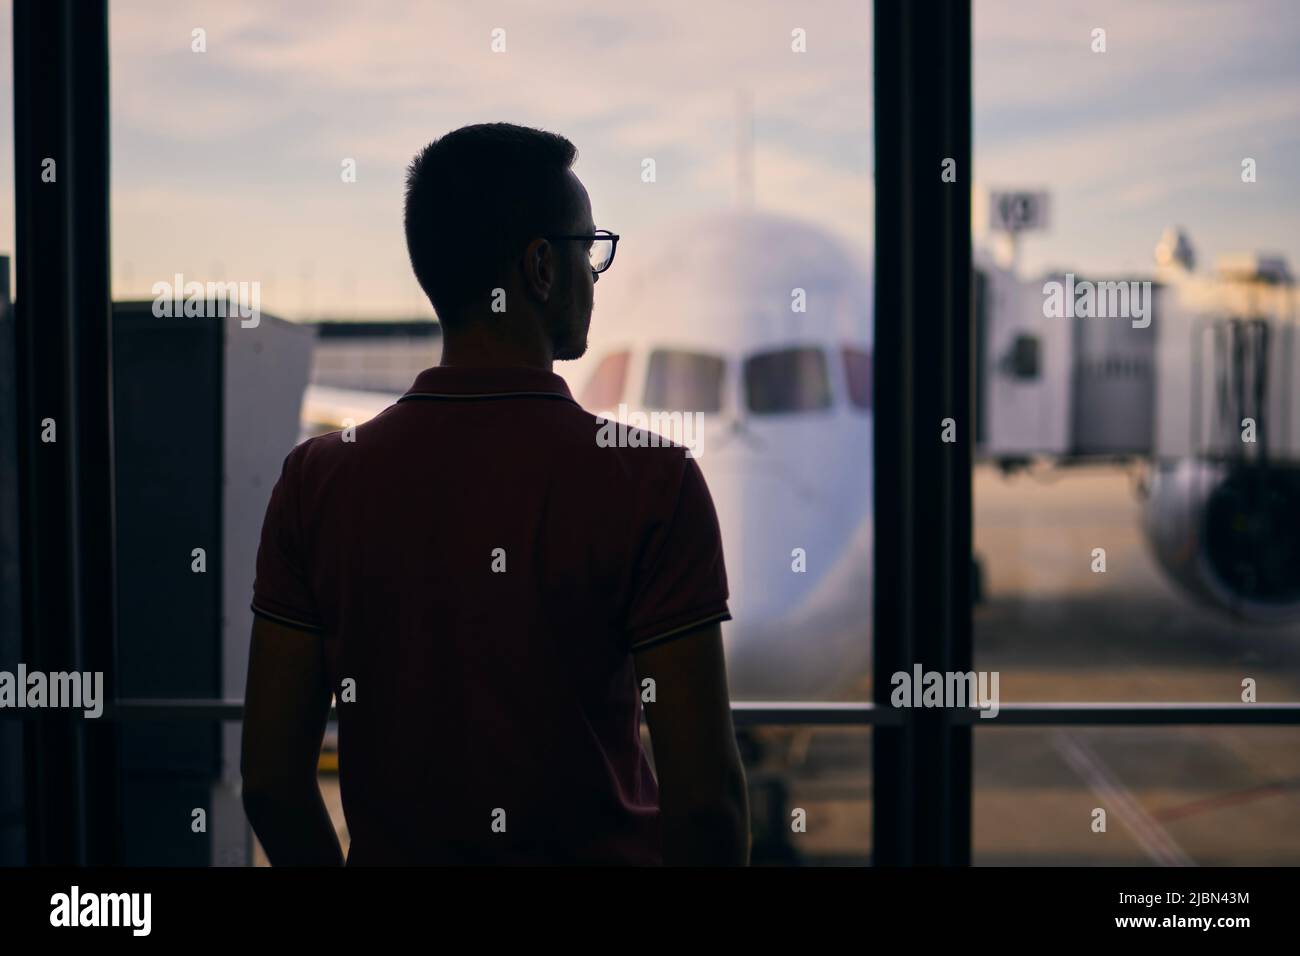 Silhouette des Menschen während des Wartens auf den Flug. Reisende, die vom Flughafenterminal aus schauen, bevor sie zum Flugzeug steigen. Stockfoto